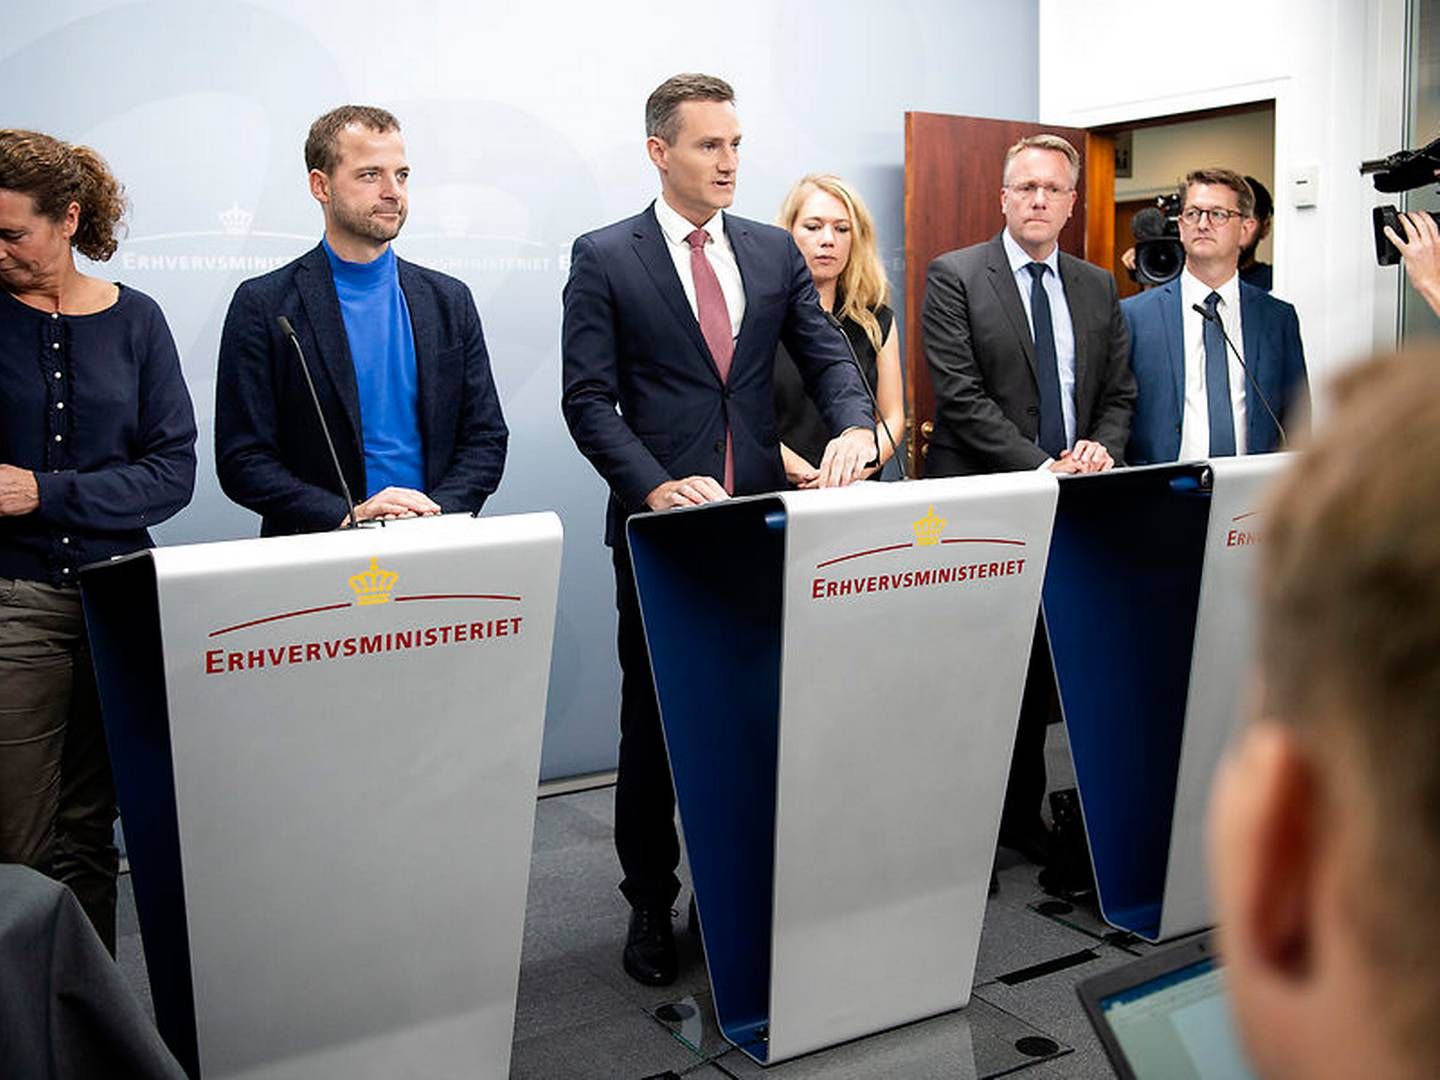 Den finansielle forligskreds med erhvervsminister Rasmus Jarlov (K) i spidsen præsenterede onsdag eftermiddag den skærpede hvidvasklovgivning | Foto: Nils Meilvang/Ritzau Scanpix